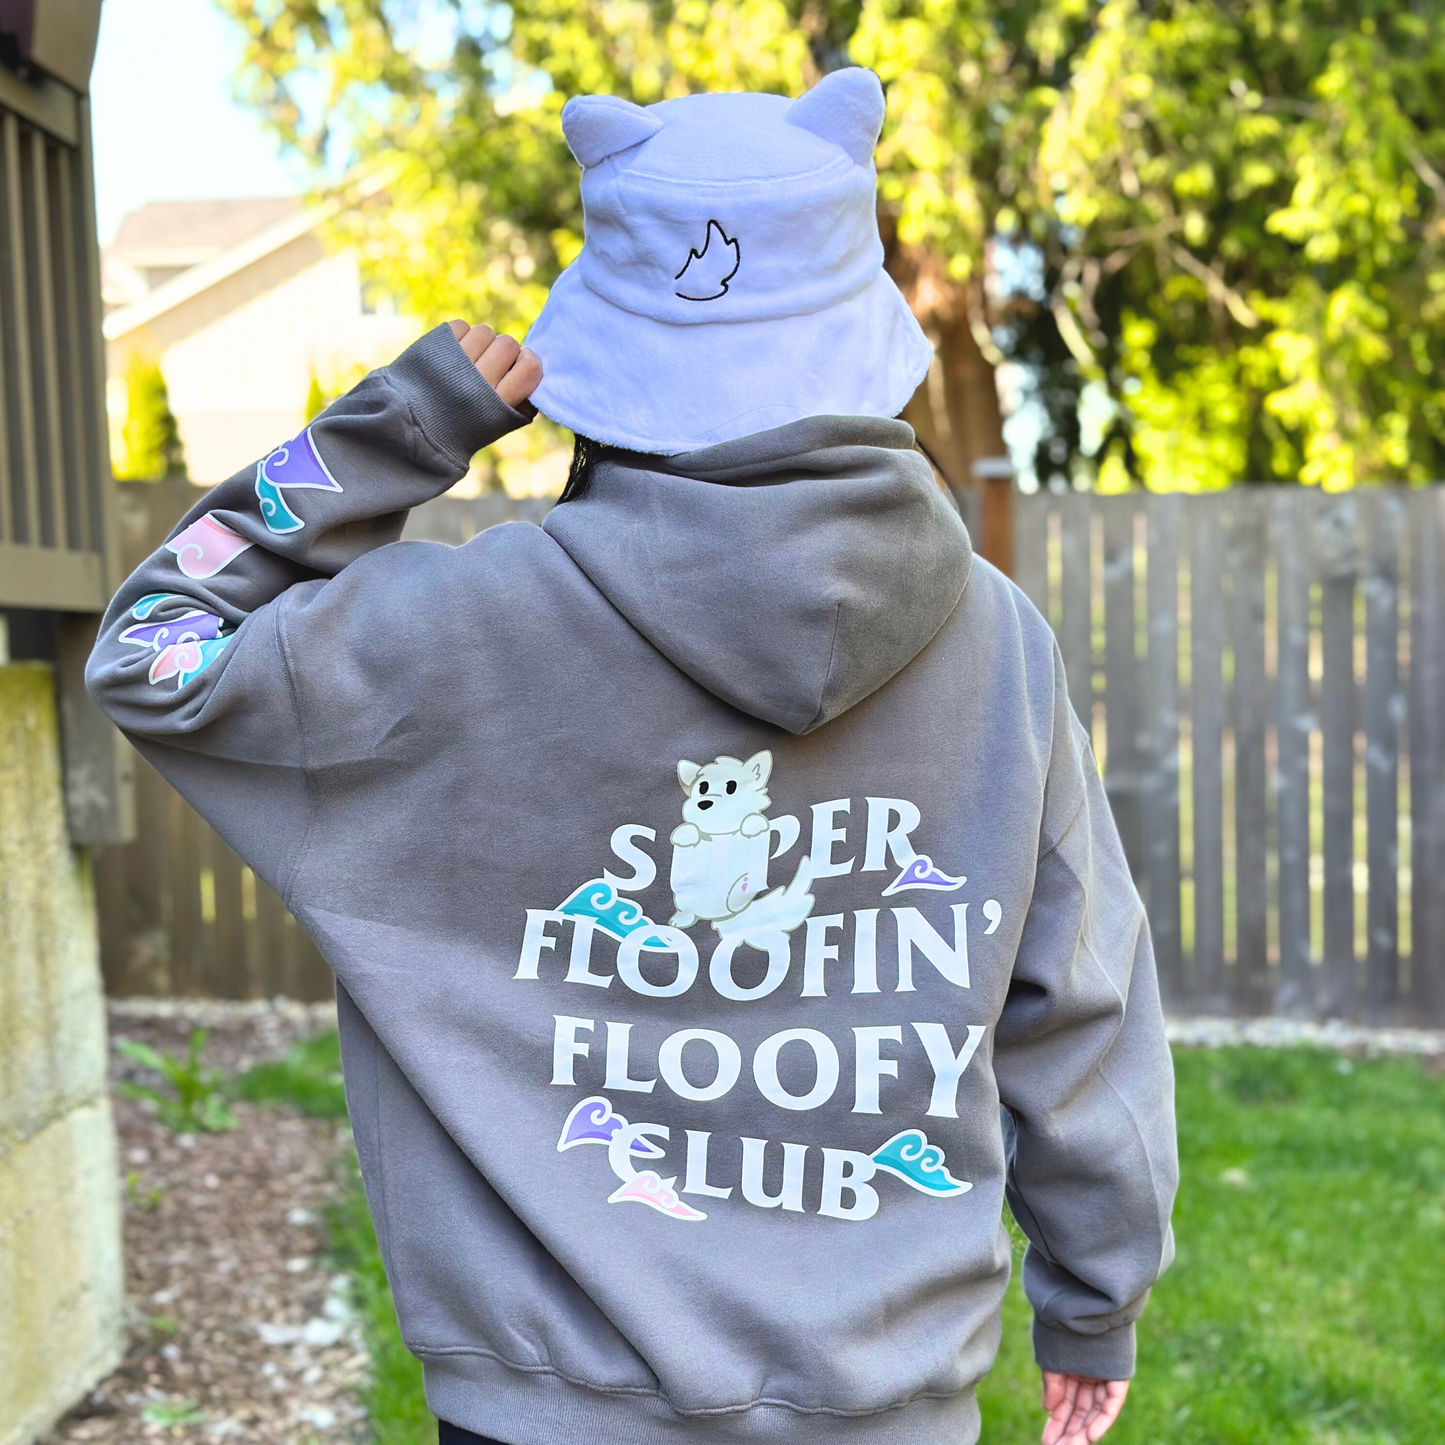 Super Floofin' Floofy Club Sweatshirt